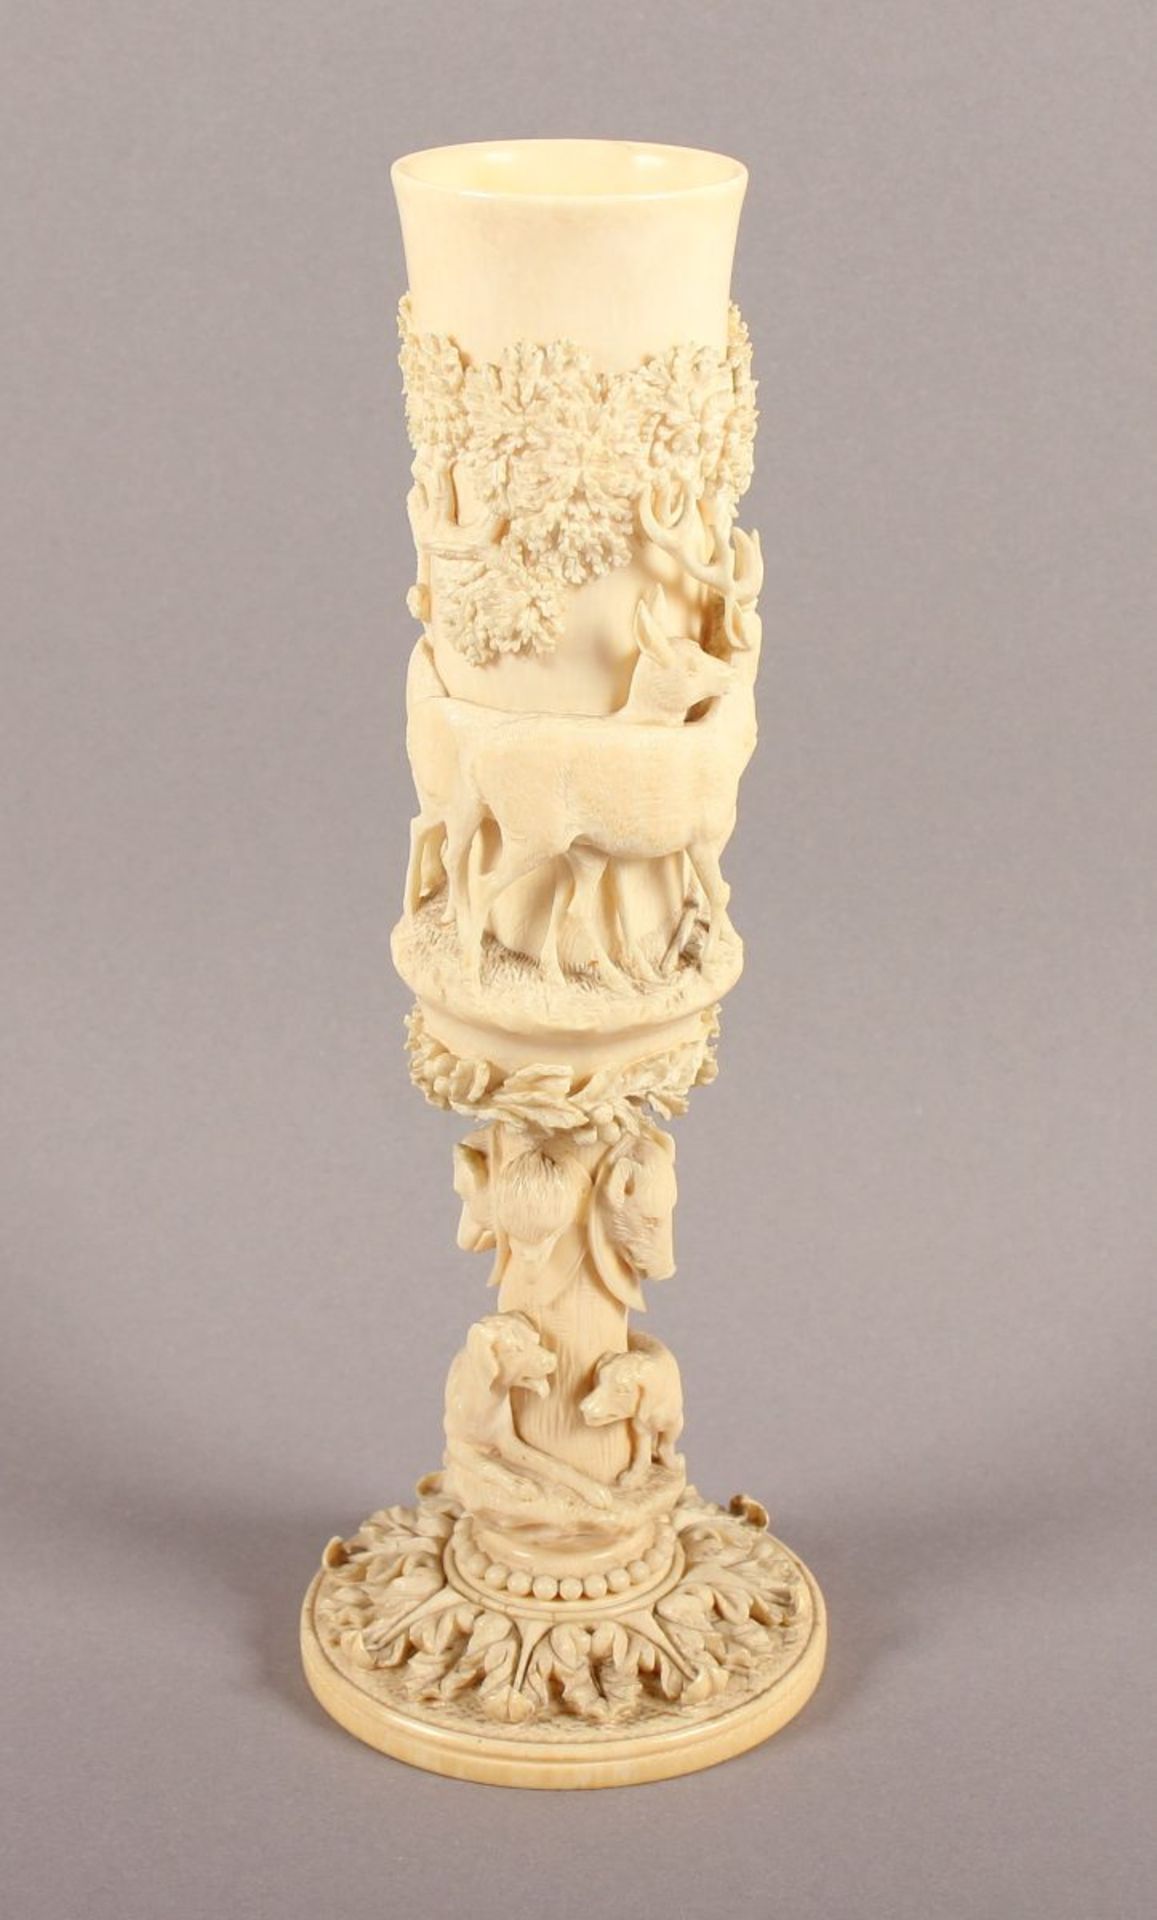 SELTENE VASE MIT JAGDMOTIVEN, Elfenbein, fein geschnitzt in Hochrelief, umlaufender Fries mit - Bild 4 aus 8